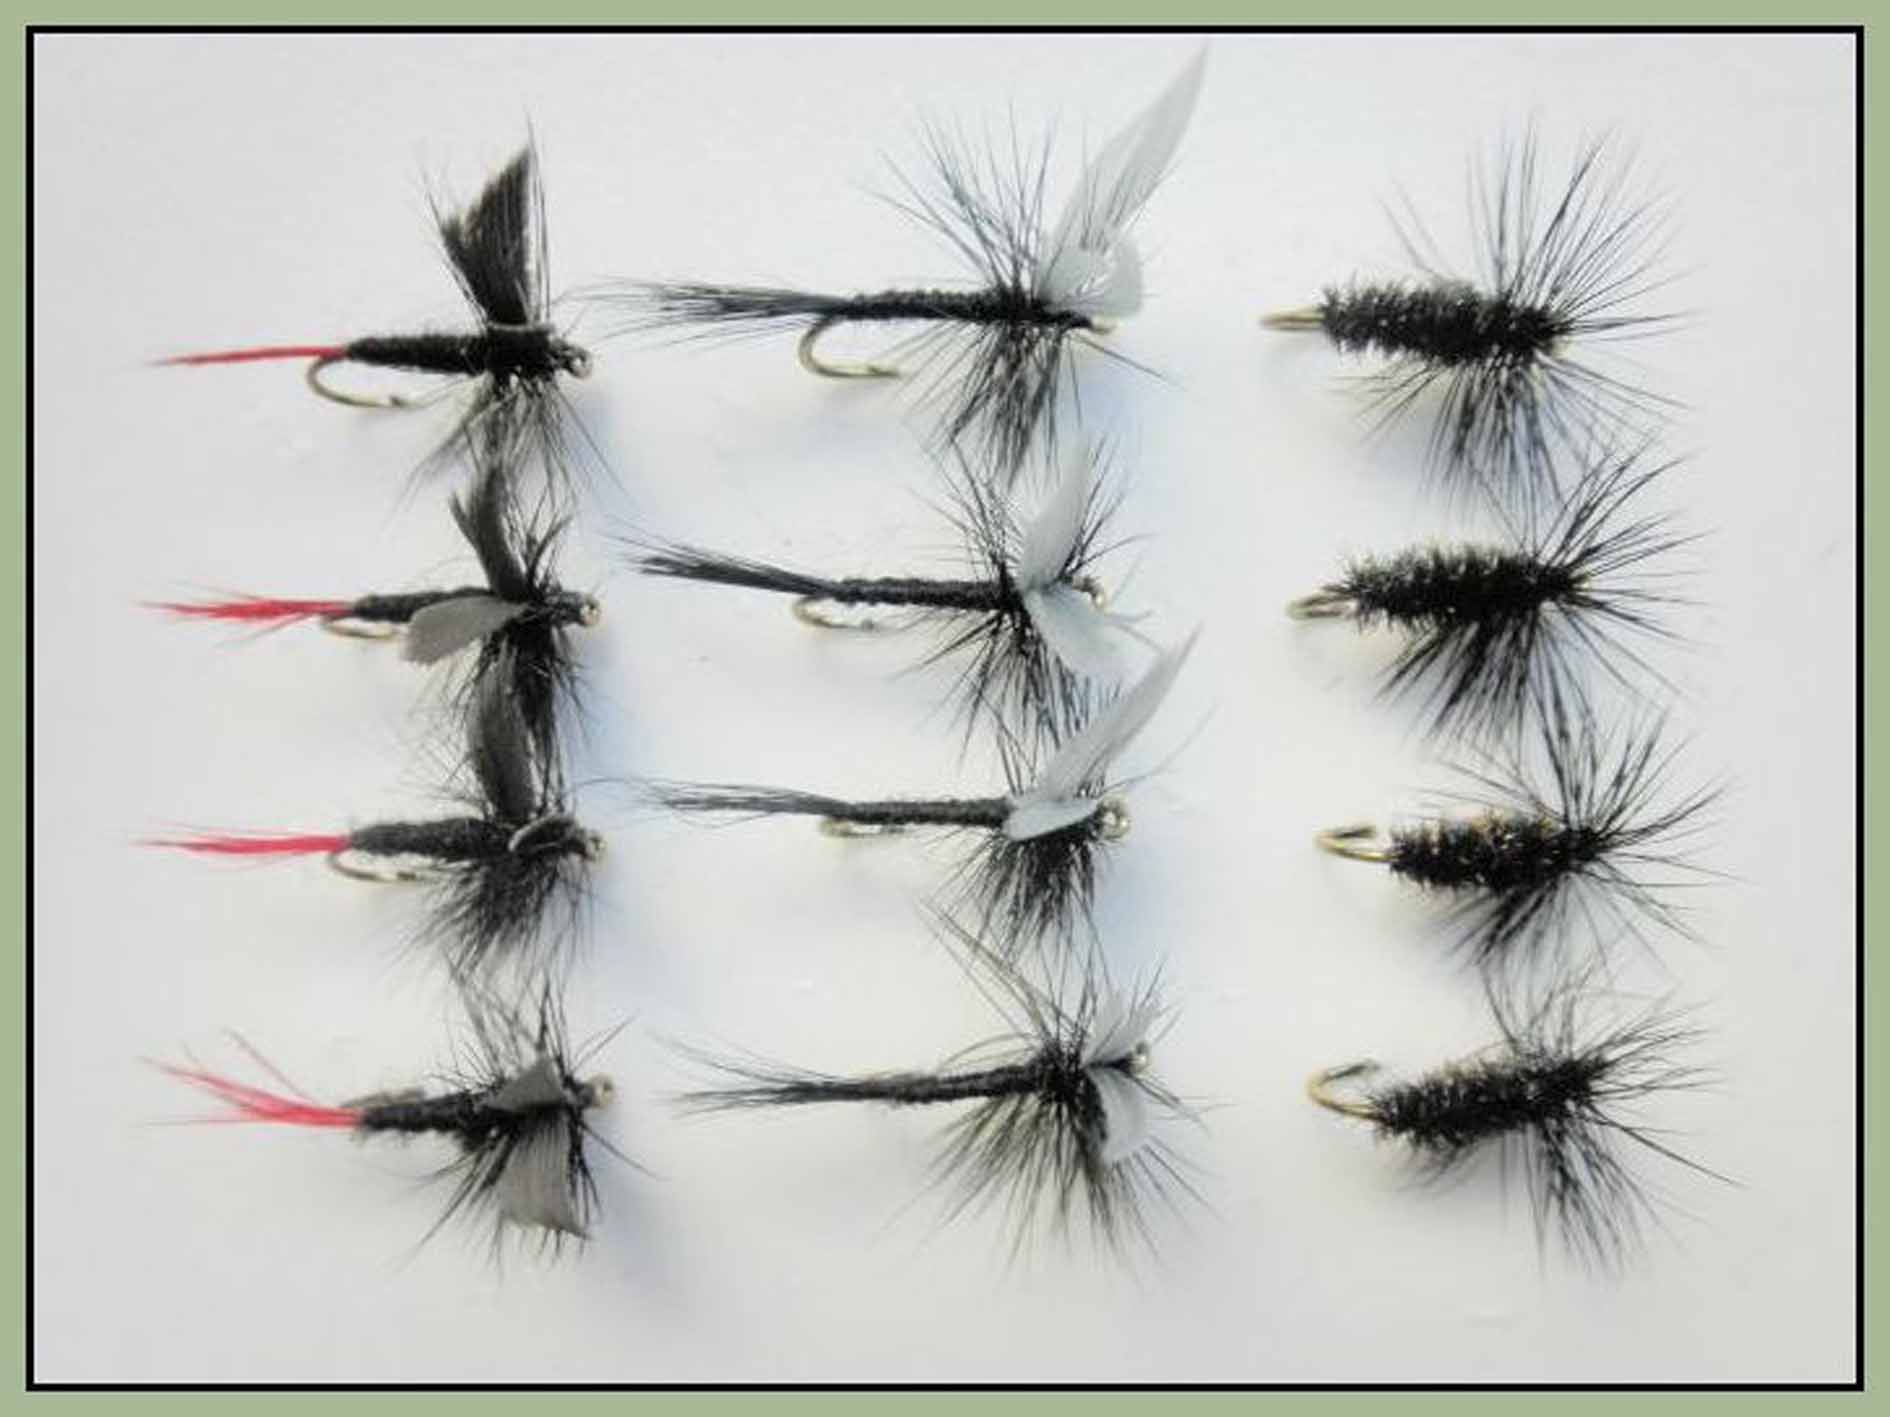 dry trout flies multi pack - Troutflies UK